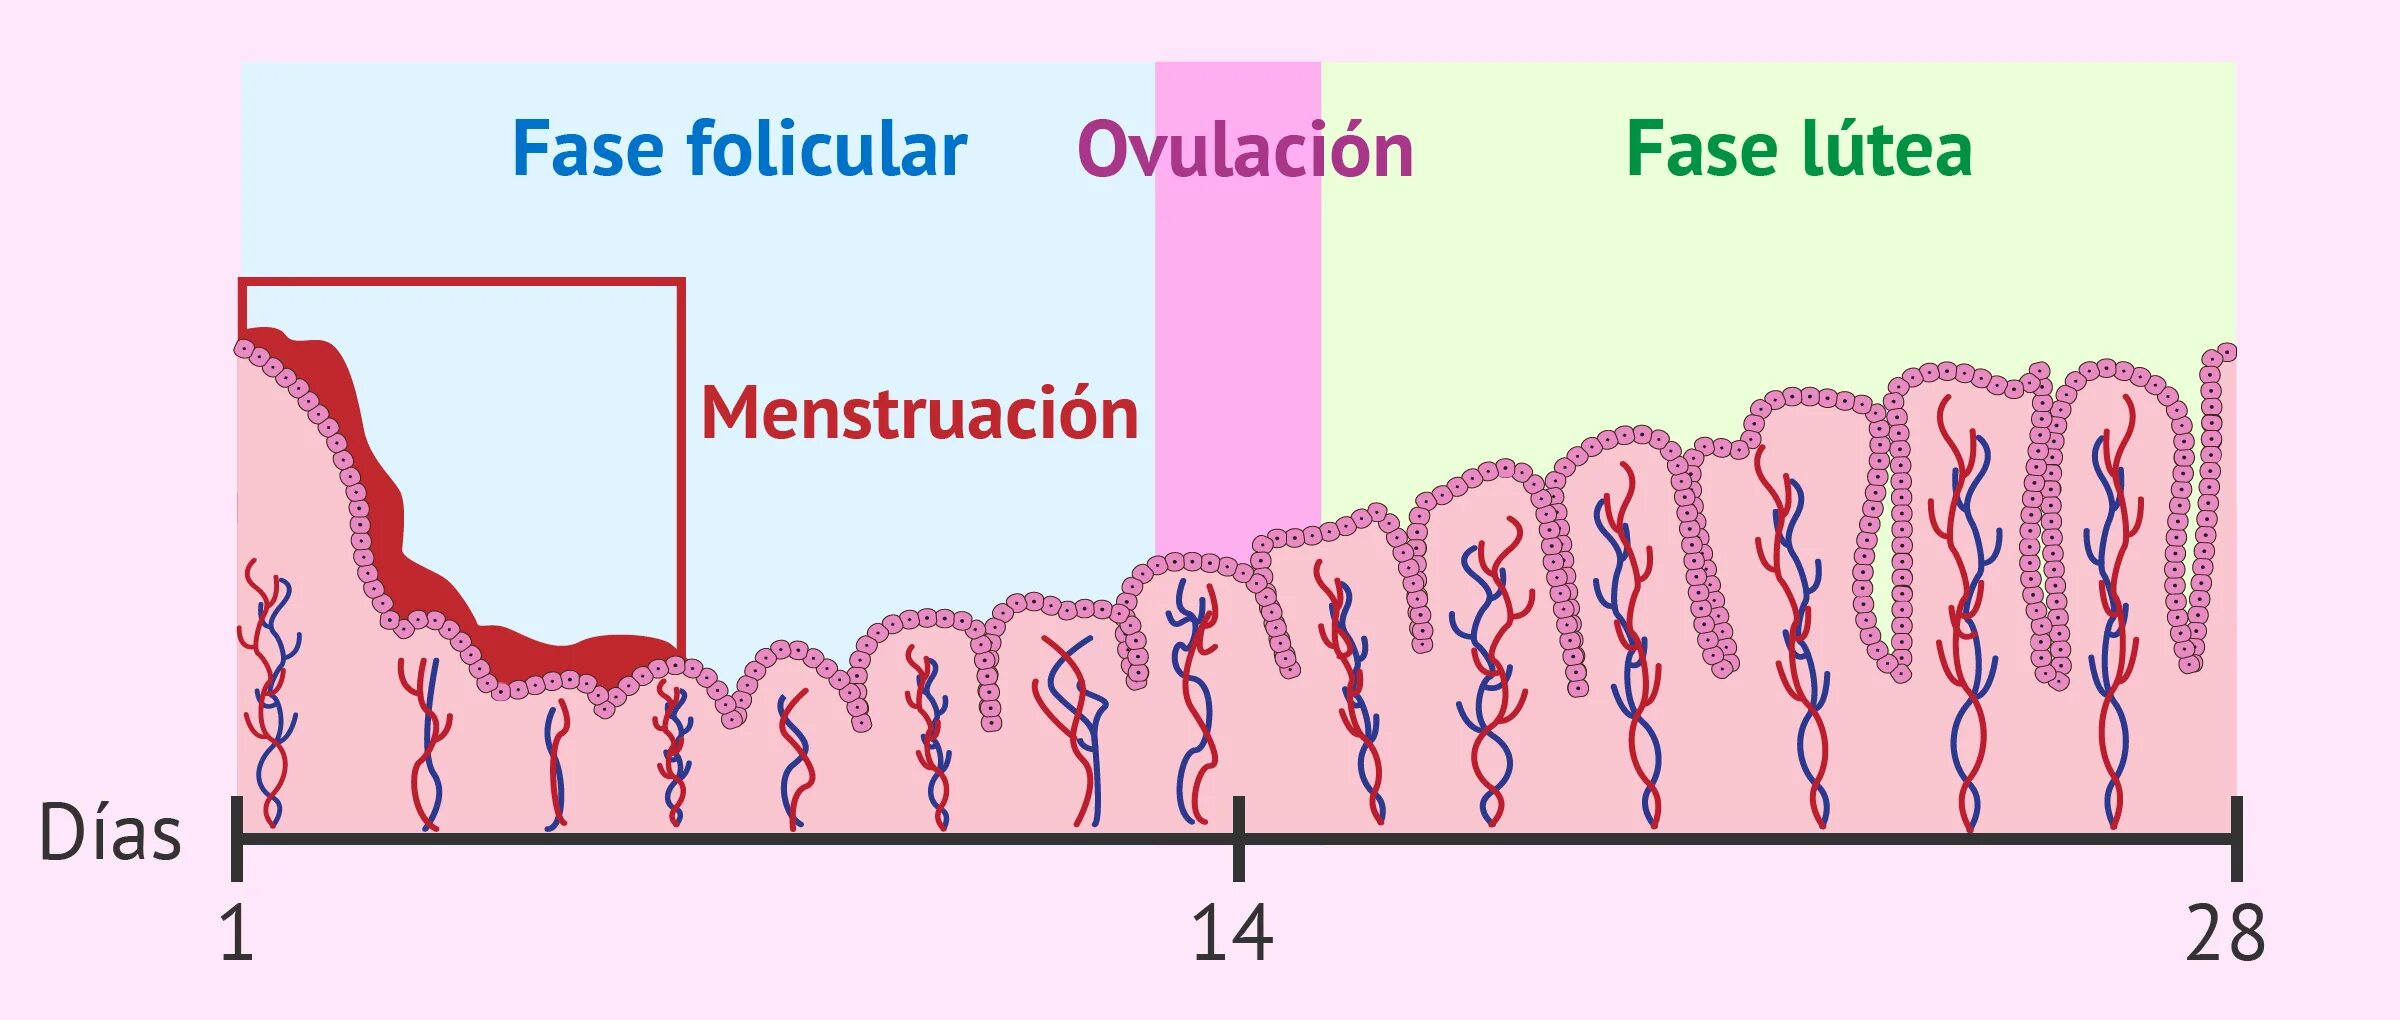 14 dias de menstruacion